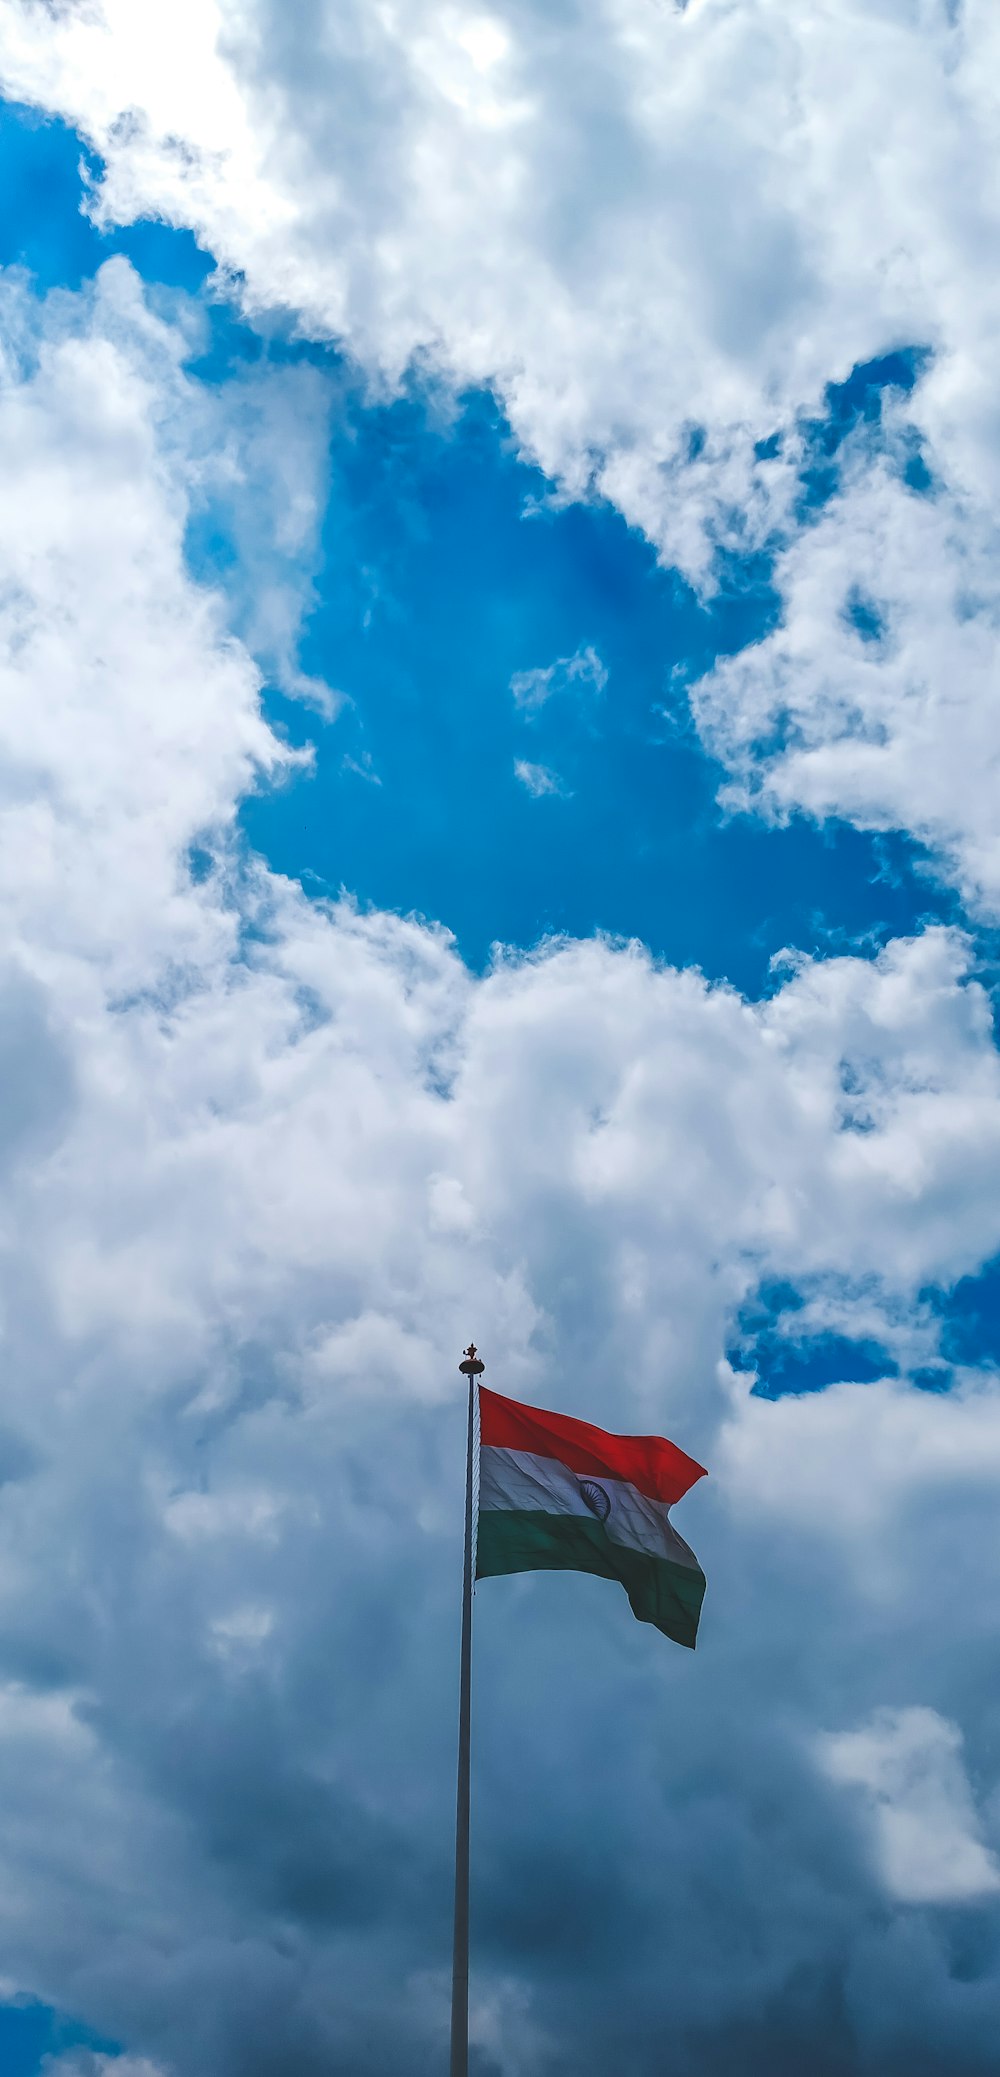 bandera roja y blanca bajo el cielo azul y nubes blancas durante el día